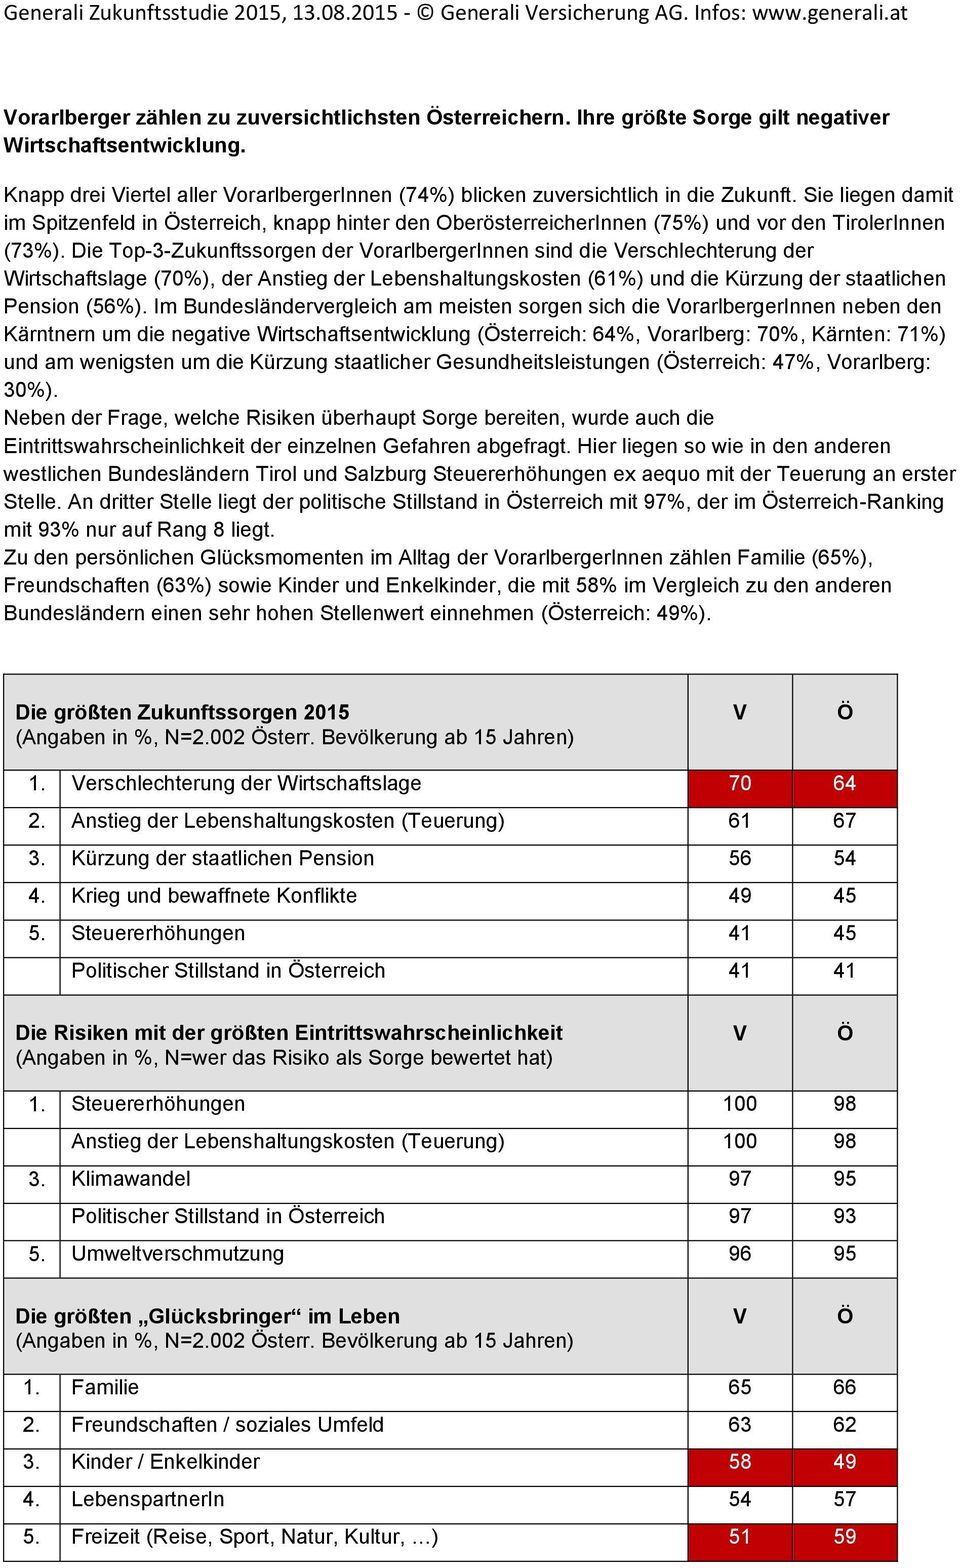 Die Top-3-Zukunftssorgen der VorarlbergerInnen sind die Verschlechterung der Wirtschaftslage (70%), der Anstieg der Lebenshaltungskosten (61%) und die Kürzung der staatlichen Pension (56%).